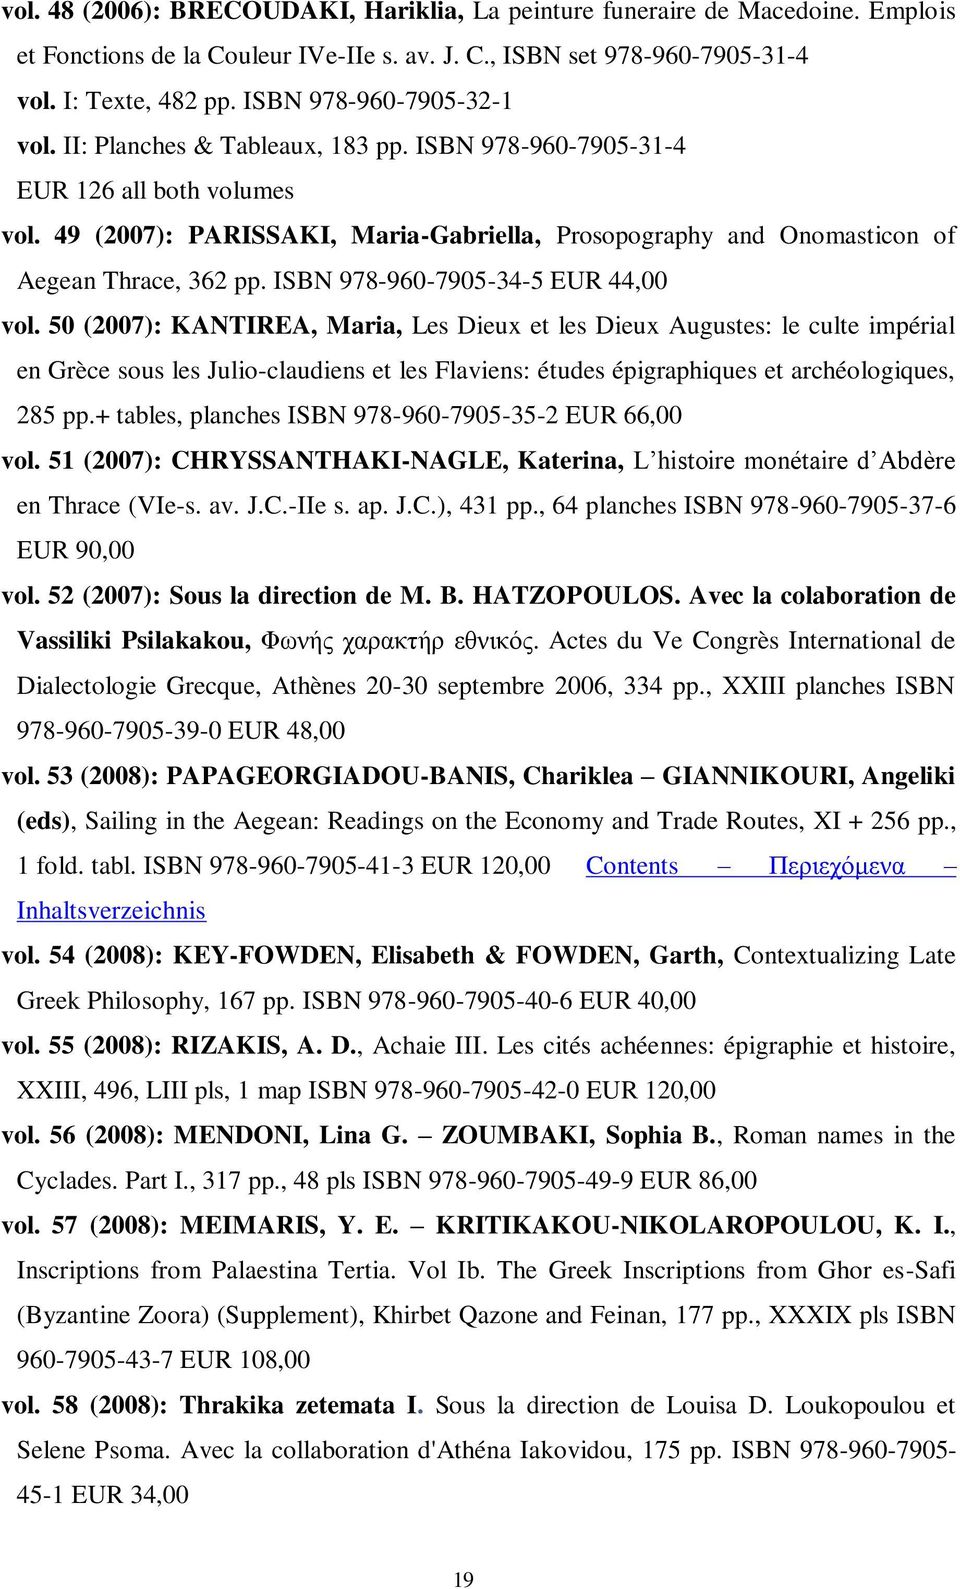 49 (2007): PARISSAKI, Maria-Gabriella, Prosopography and Onomasticon of Aegean Thrace, 362 pp. ISBN 978-960-7905-34-5 EUR 44,00 vol.